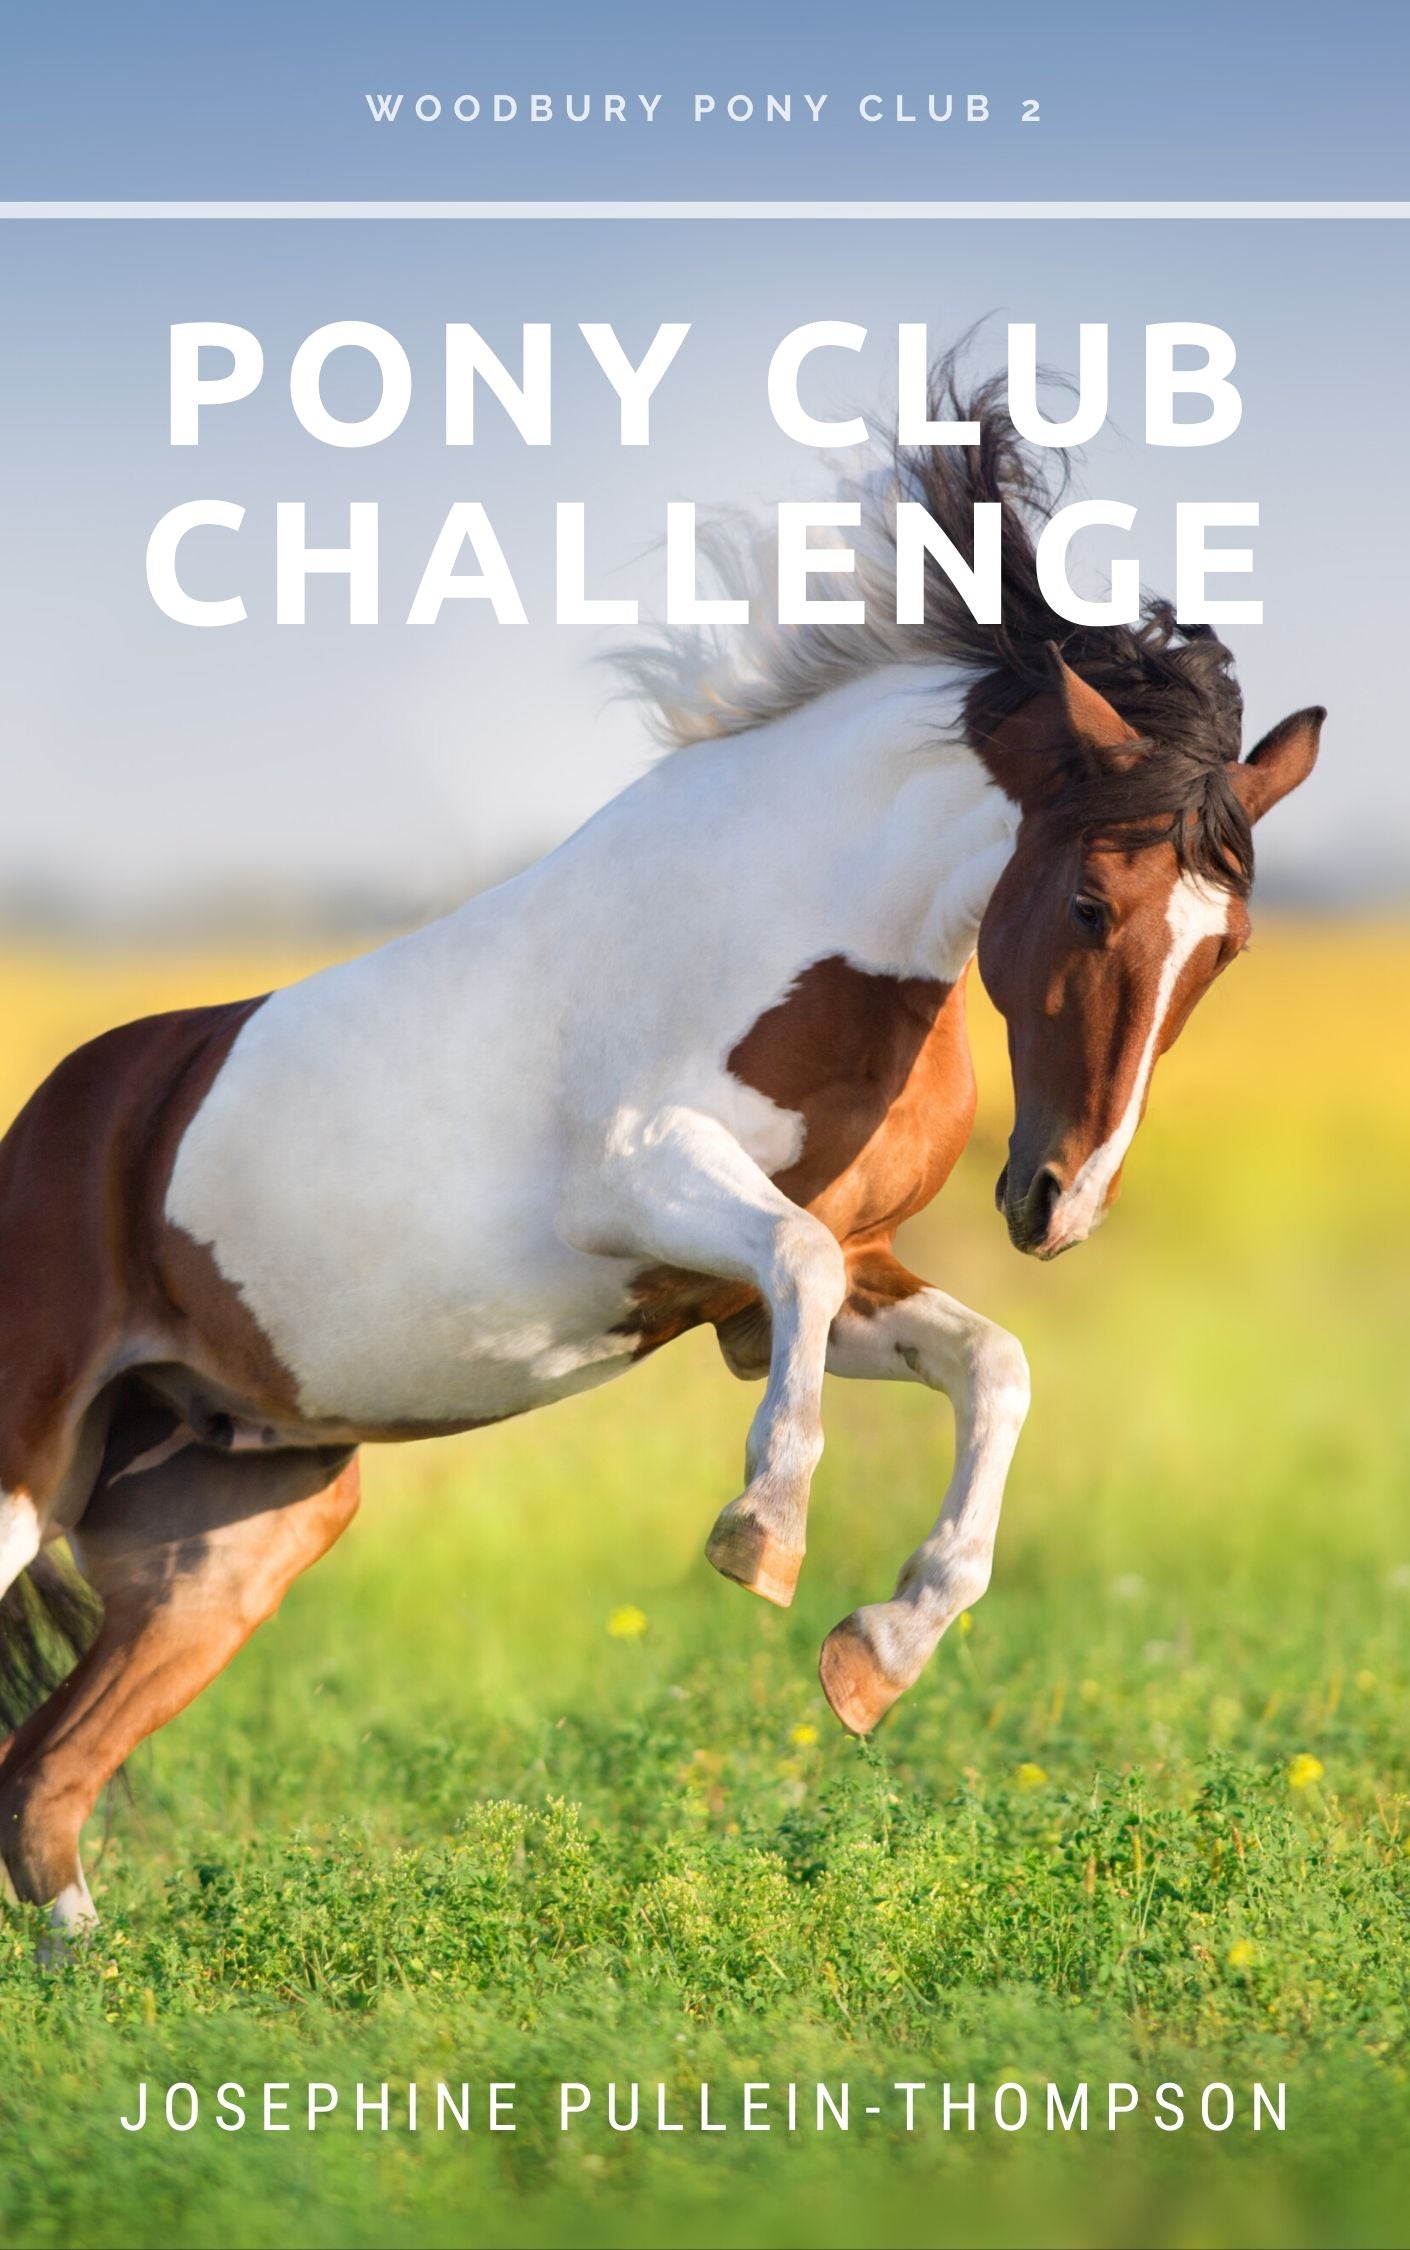 Josephine Pullein-Thompson: Pony Club Challenge (eBook)